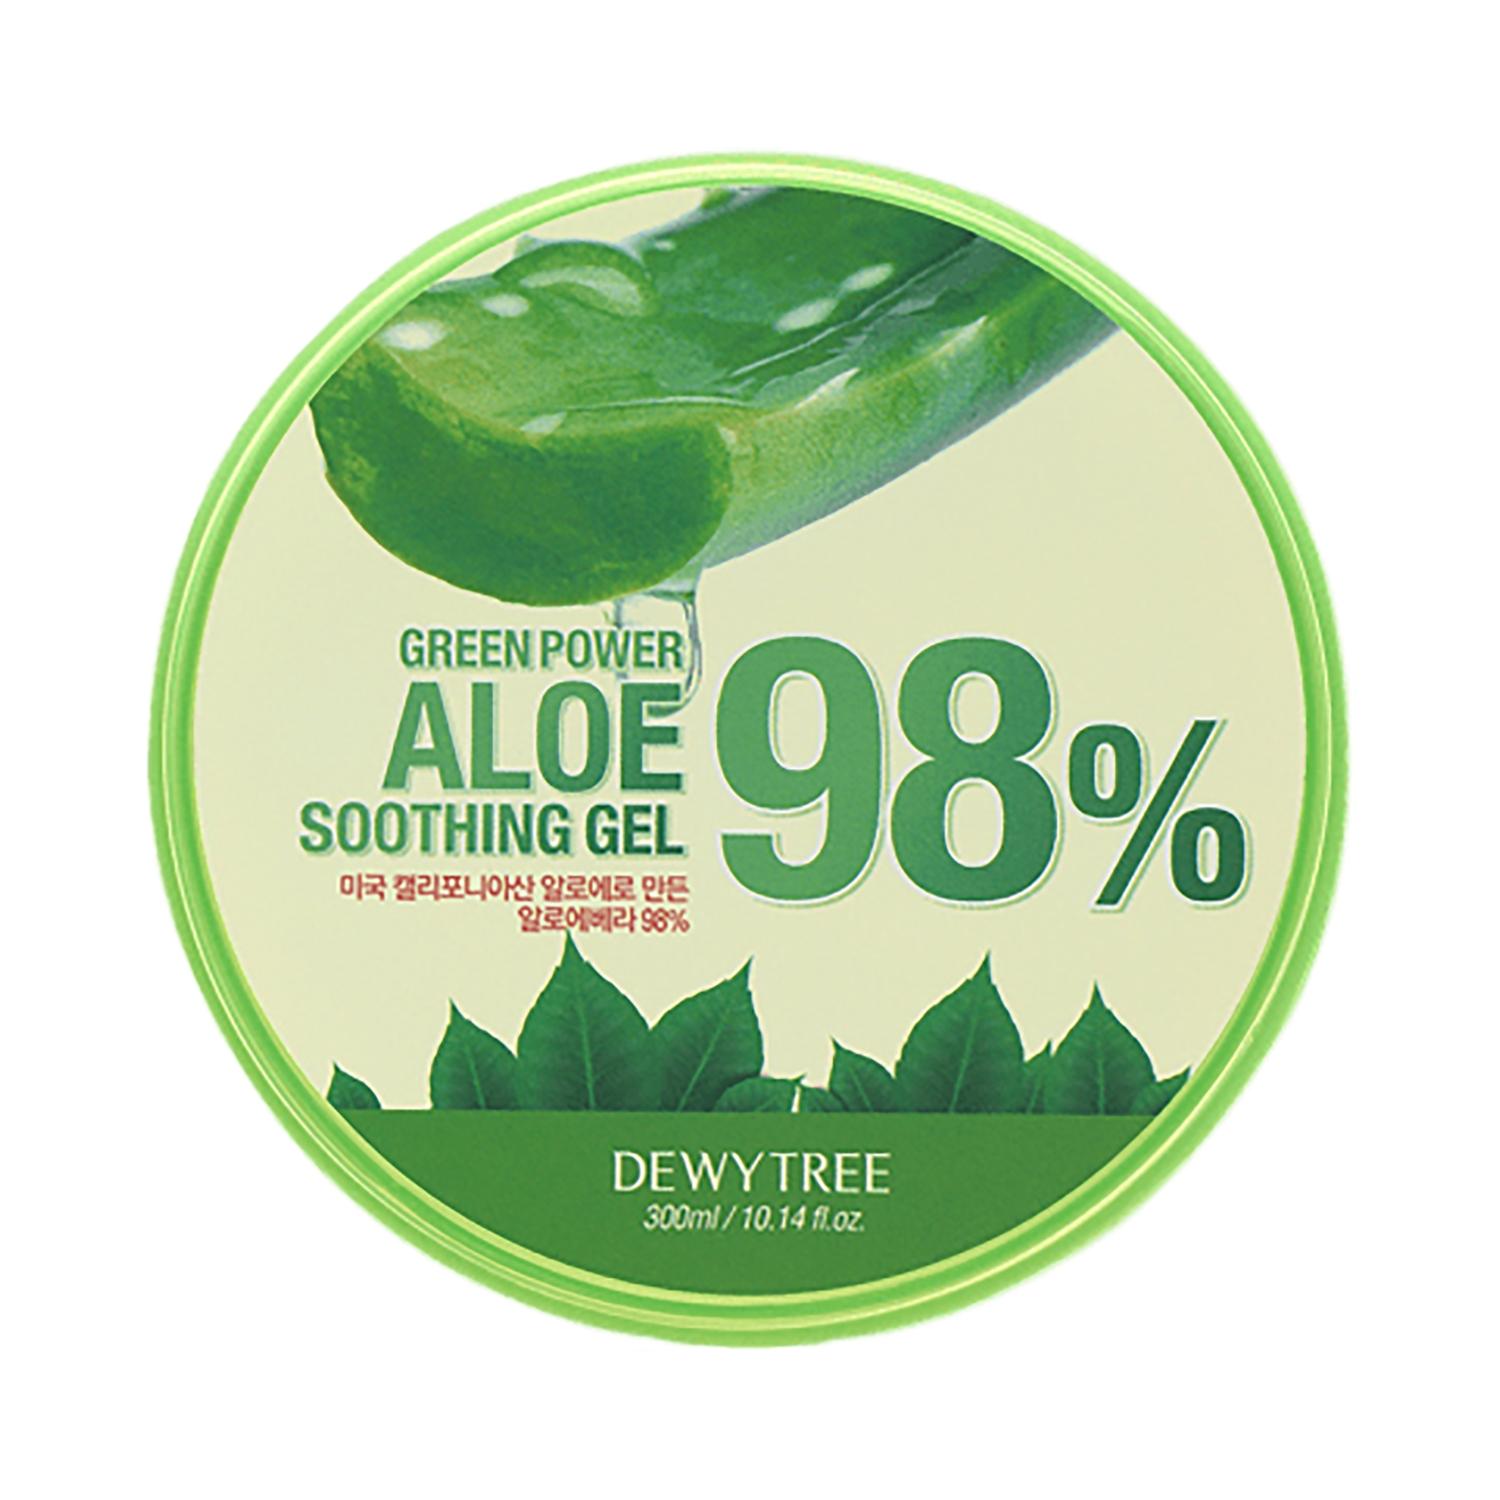 dewytree green power 98% aloe soothing gel (300ml)